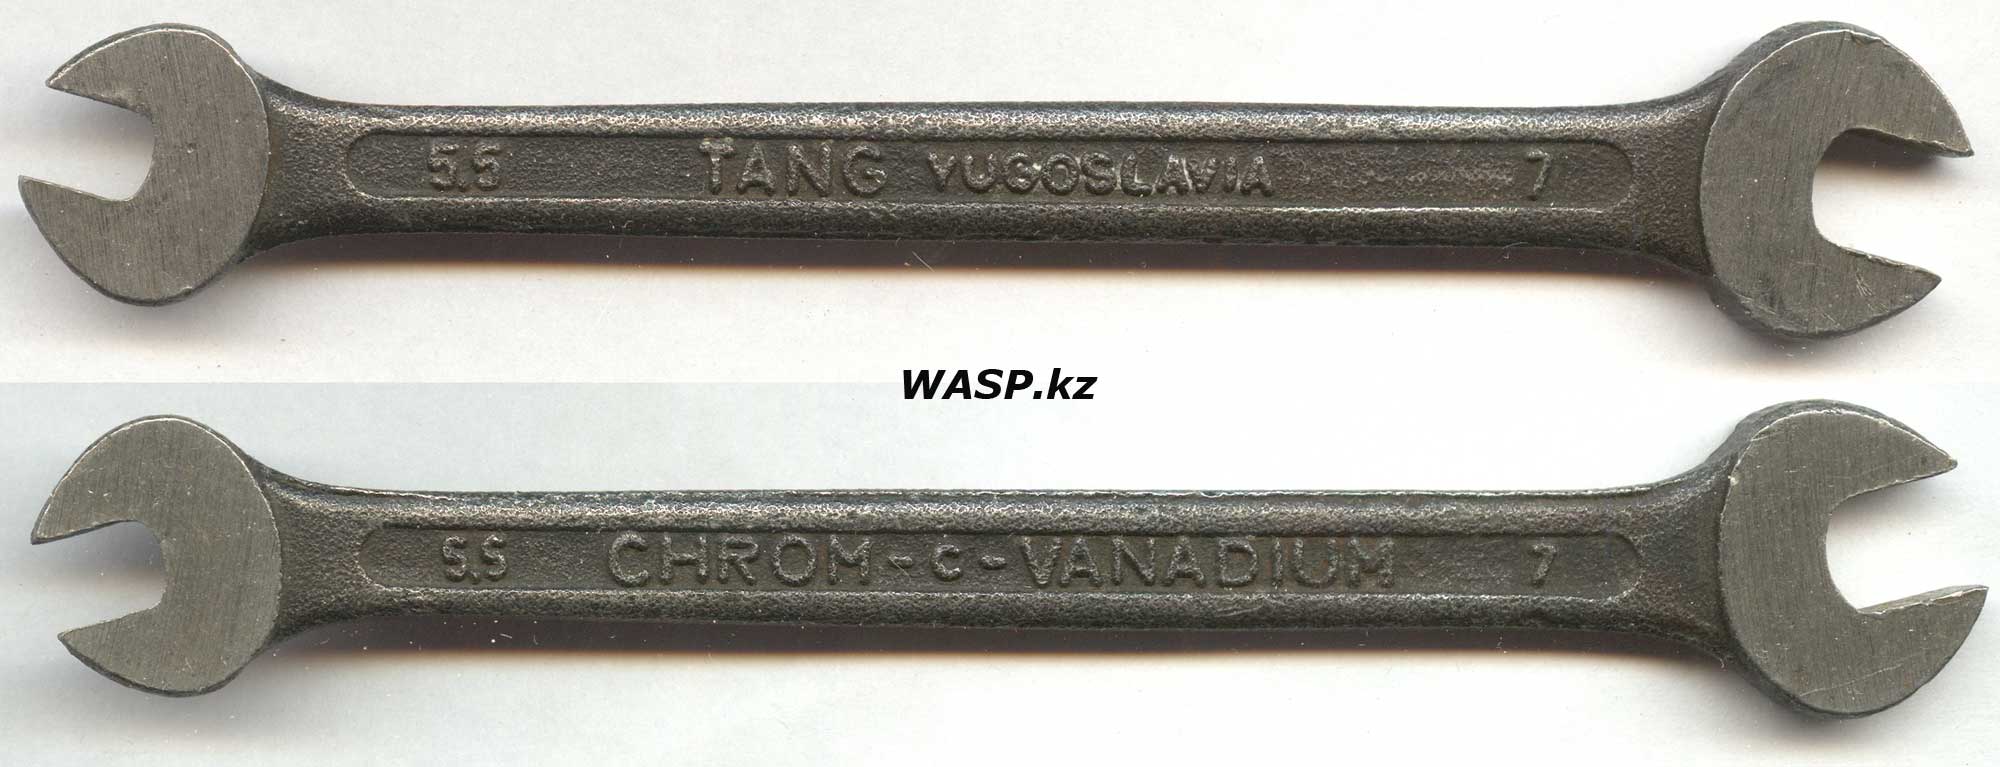 wasp.kz/images/news/2-rem-ussr-mash-kl-logo-ttttfgf.jpg